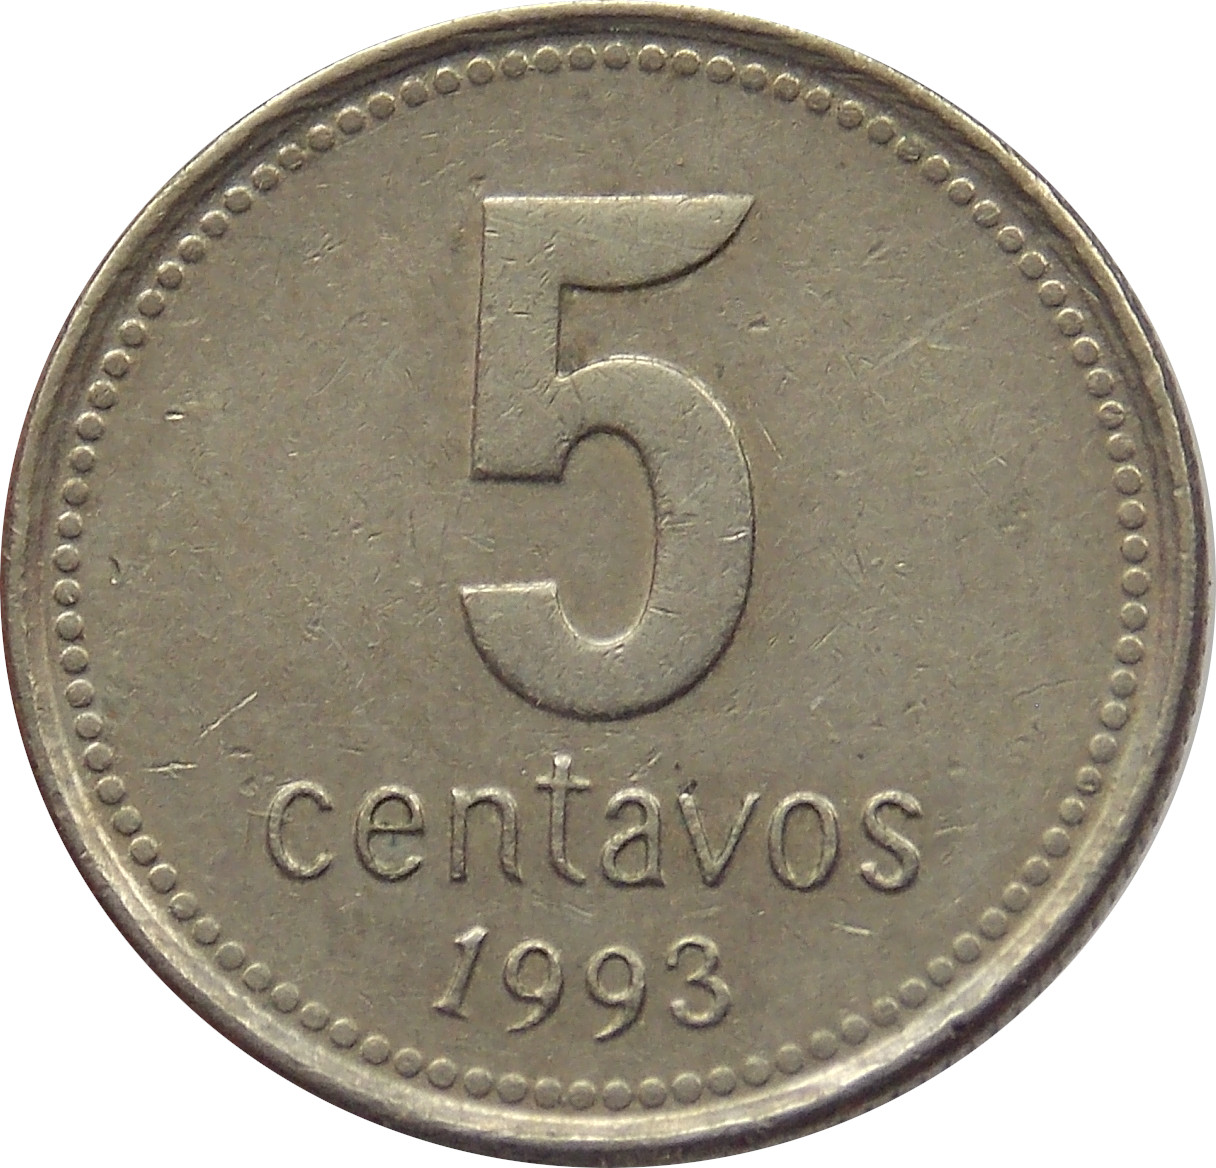 Argentína 5 Centavos 1993